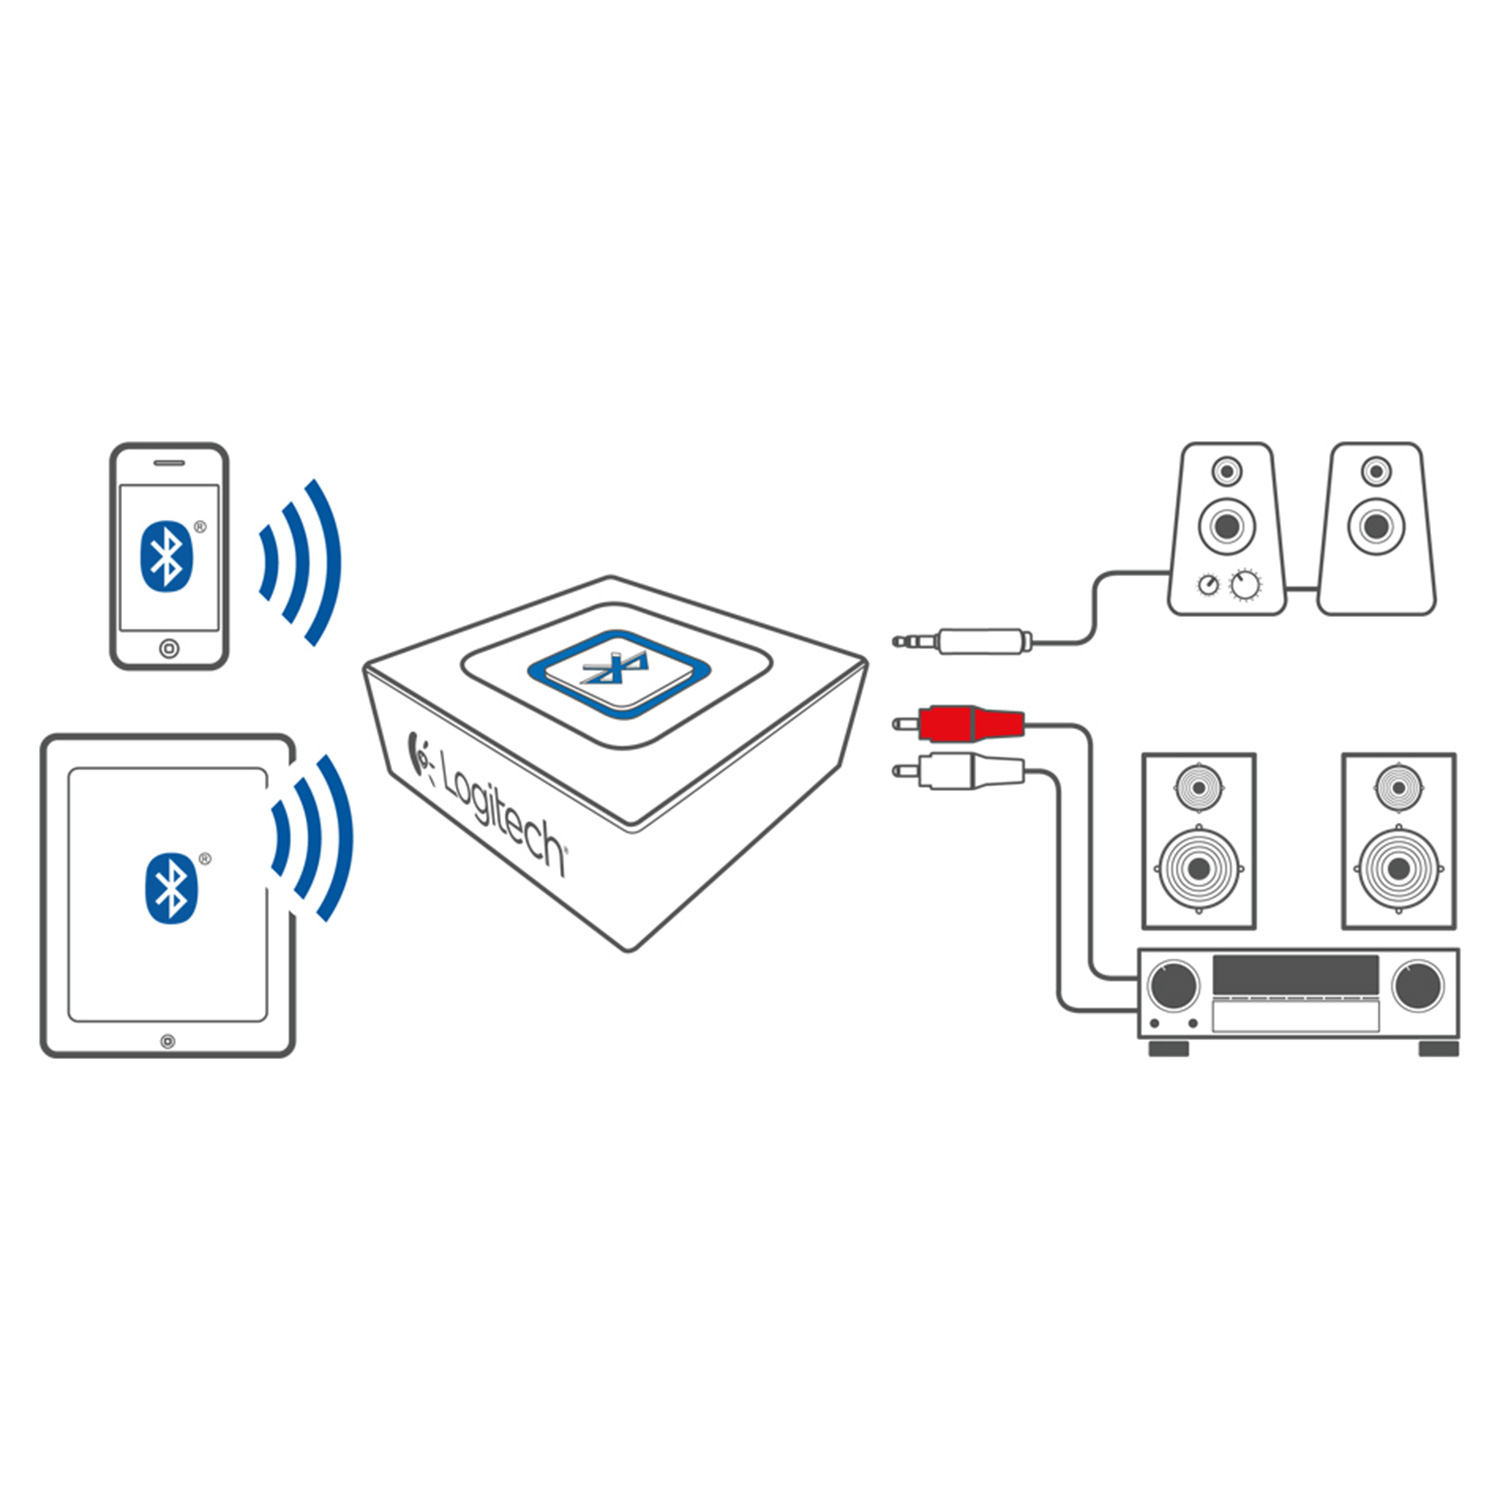 LOGITECH Adapter Schwarz Audio Bluetooth